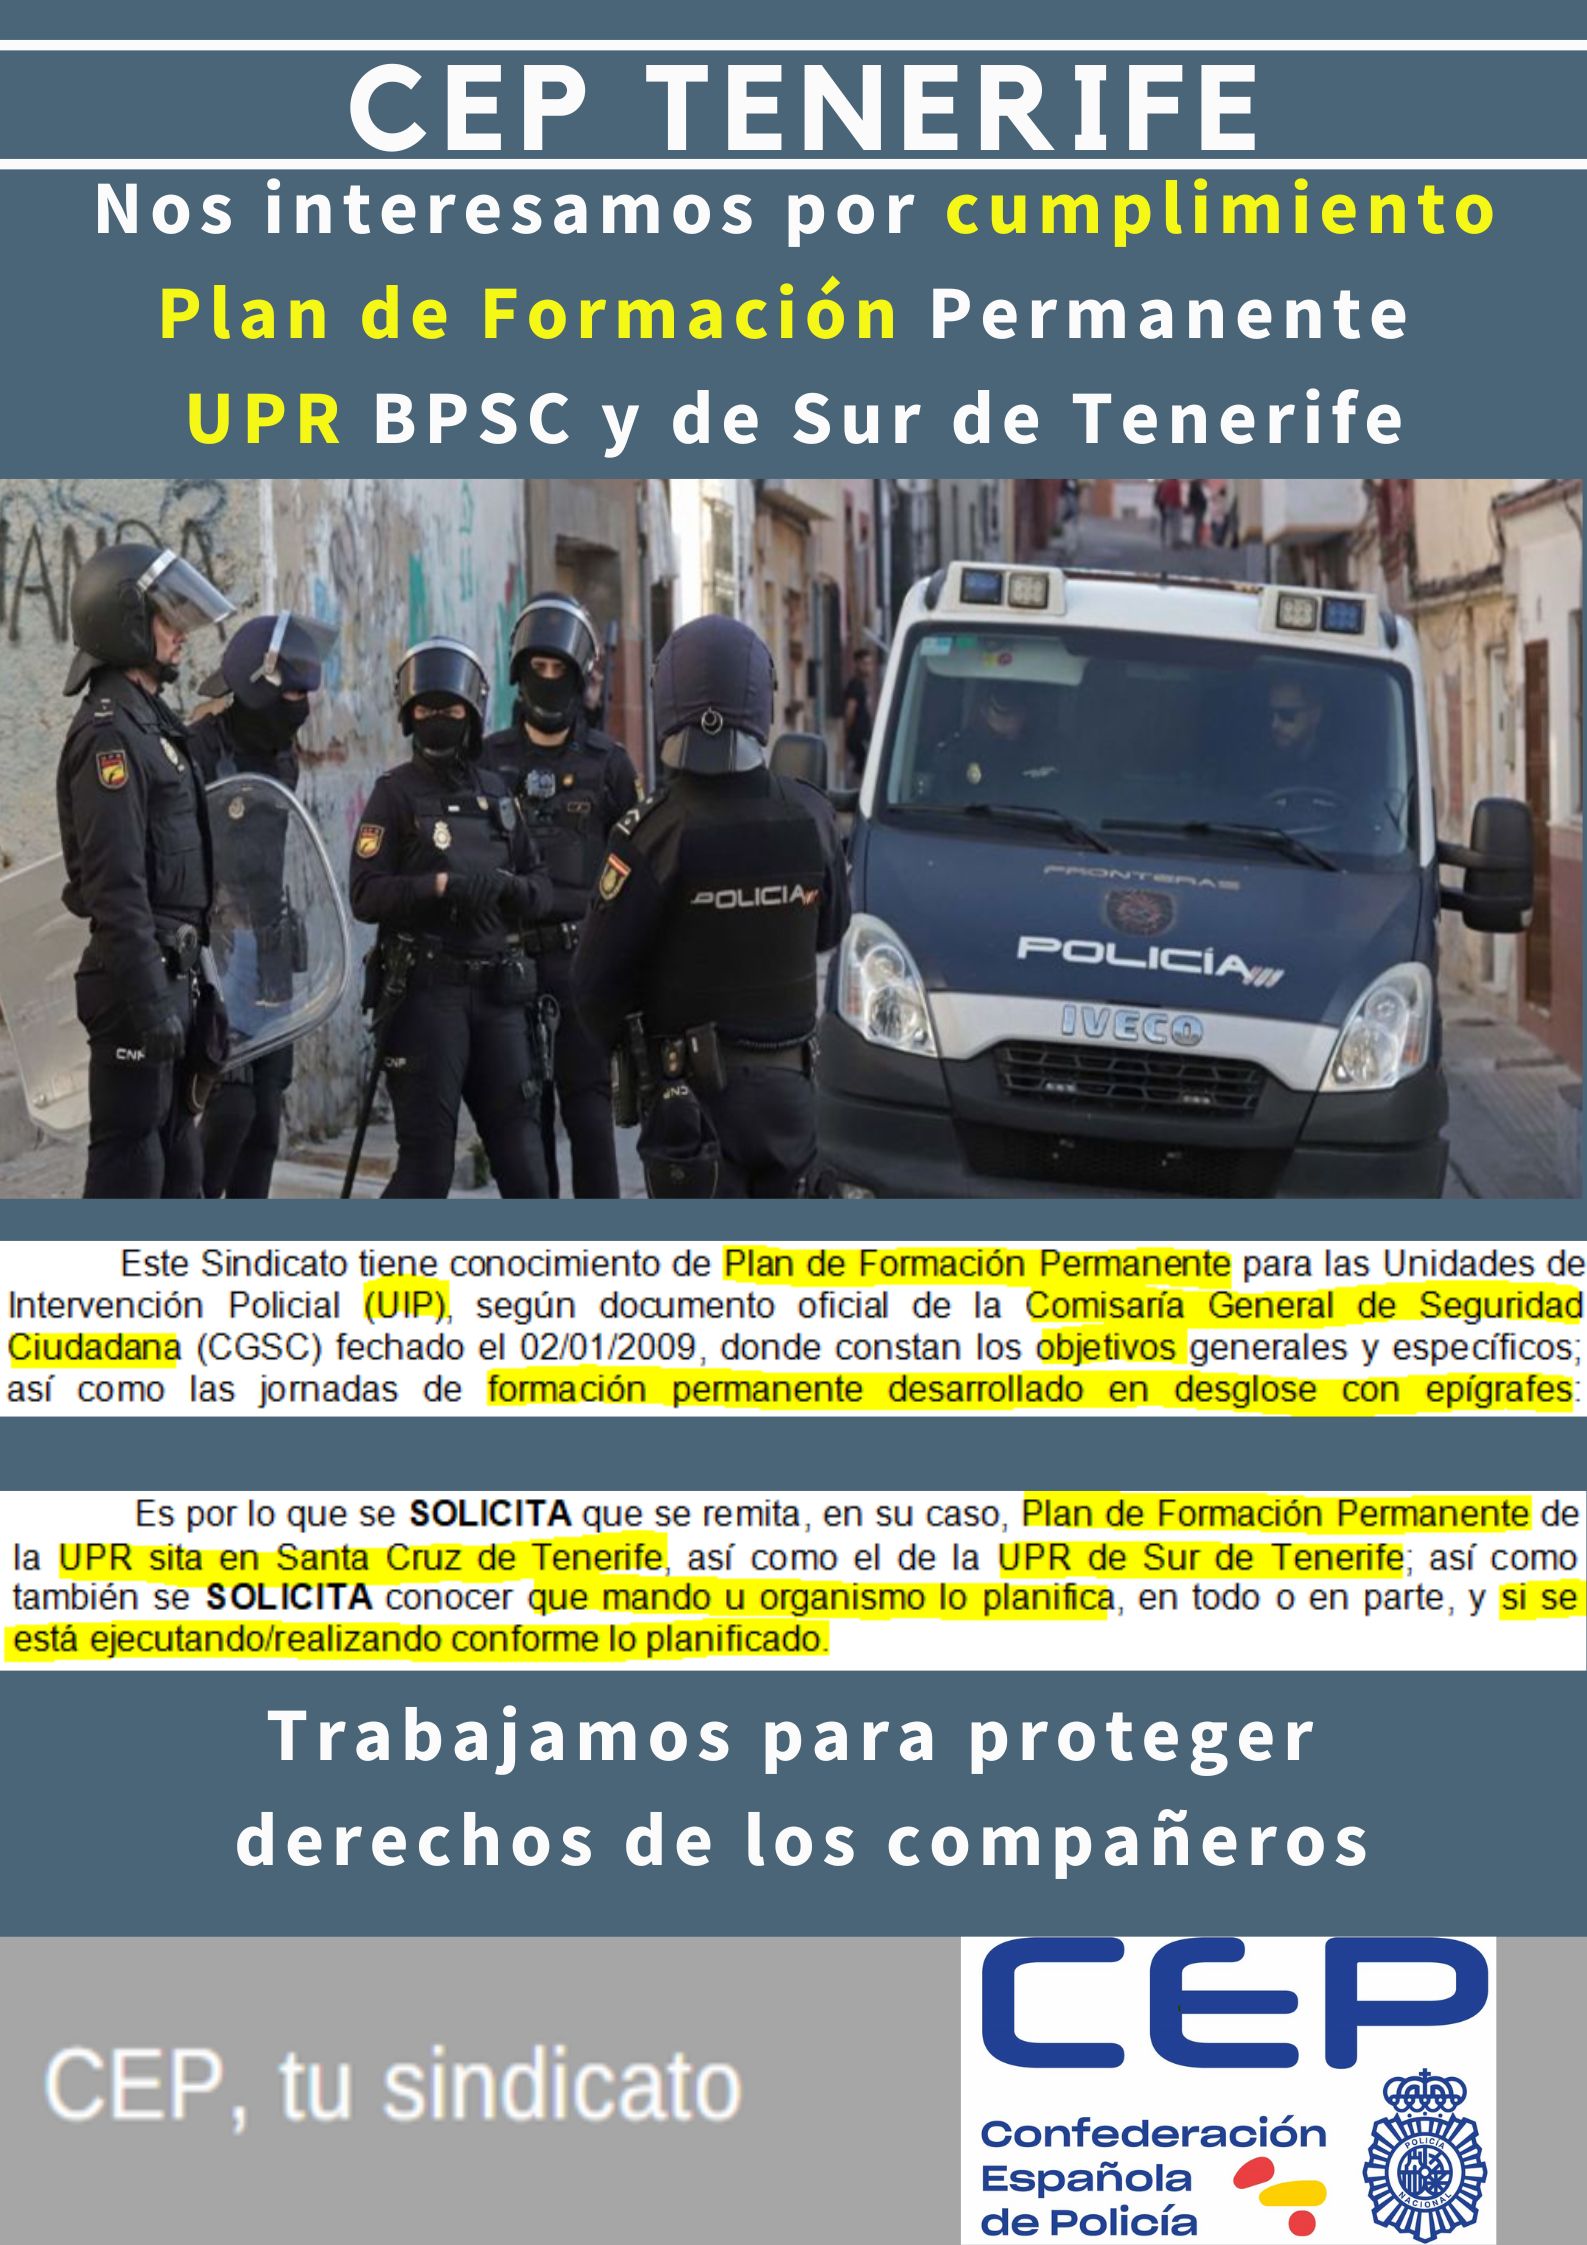 Nos interesamos por cumplimiento plan formación permanente UPR BPSC y Sur de Tenerife